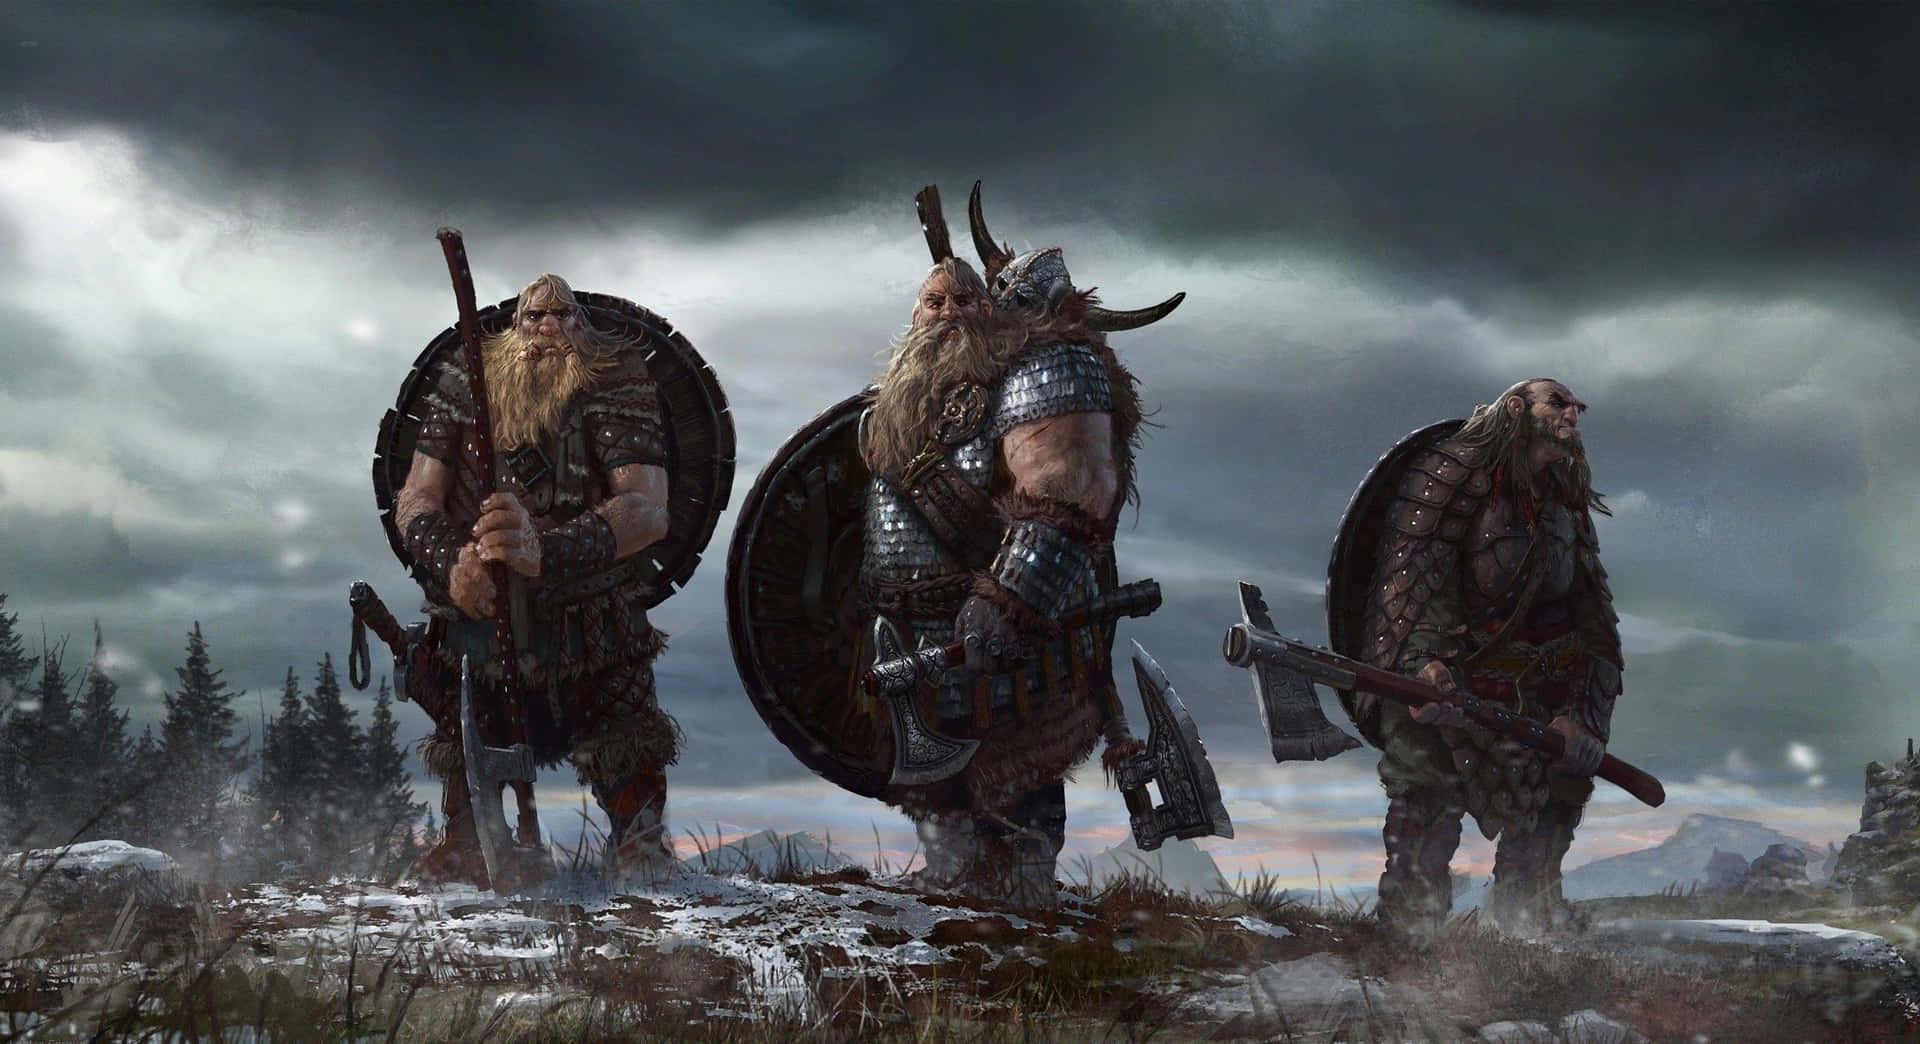 A Viking Warrior Embarking on an Adventure